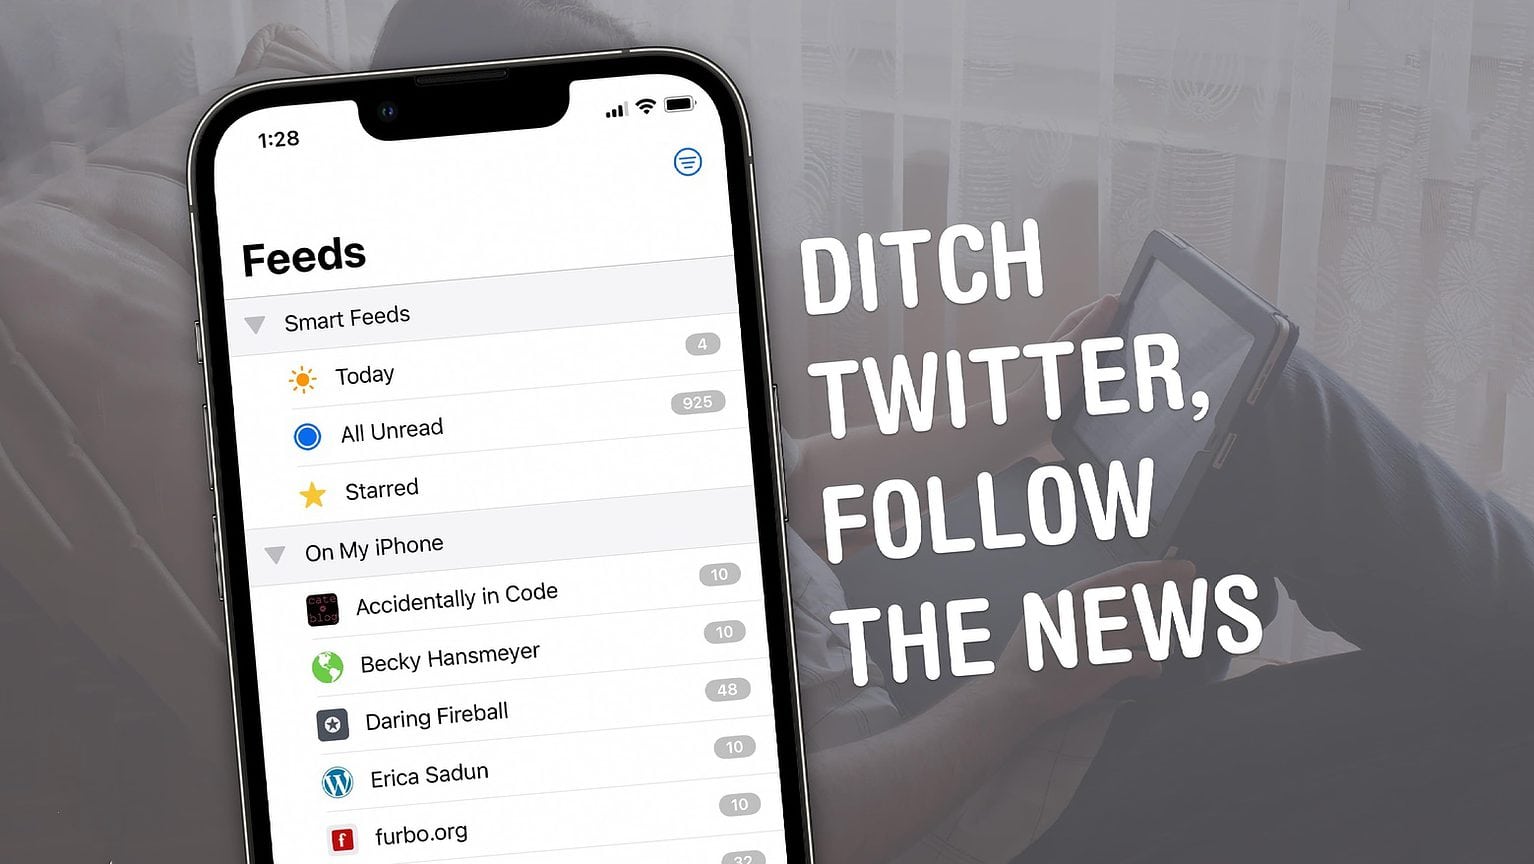 Ditch Twitter, follow the news.